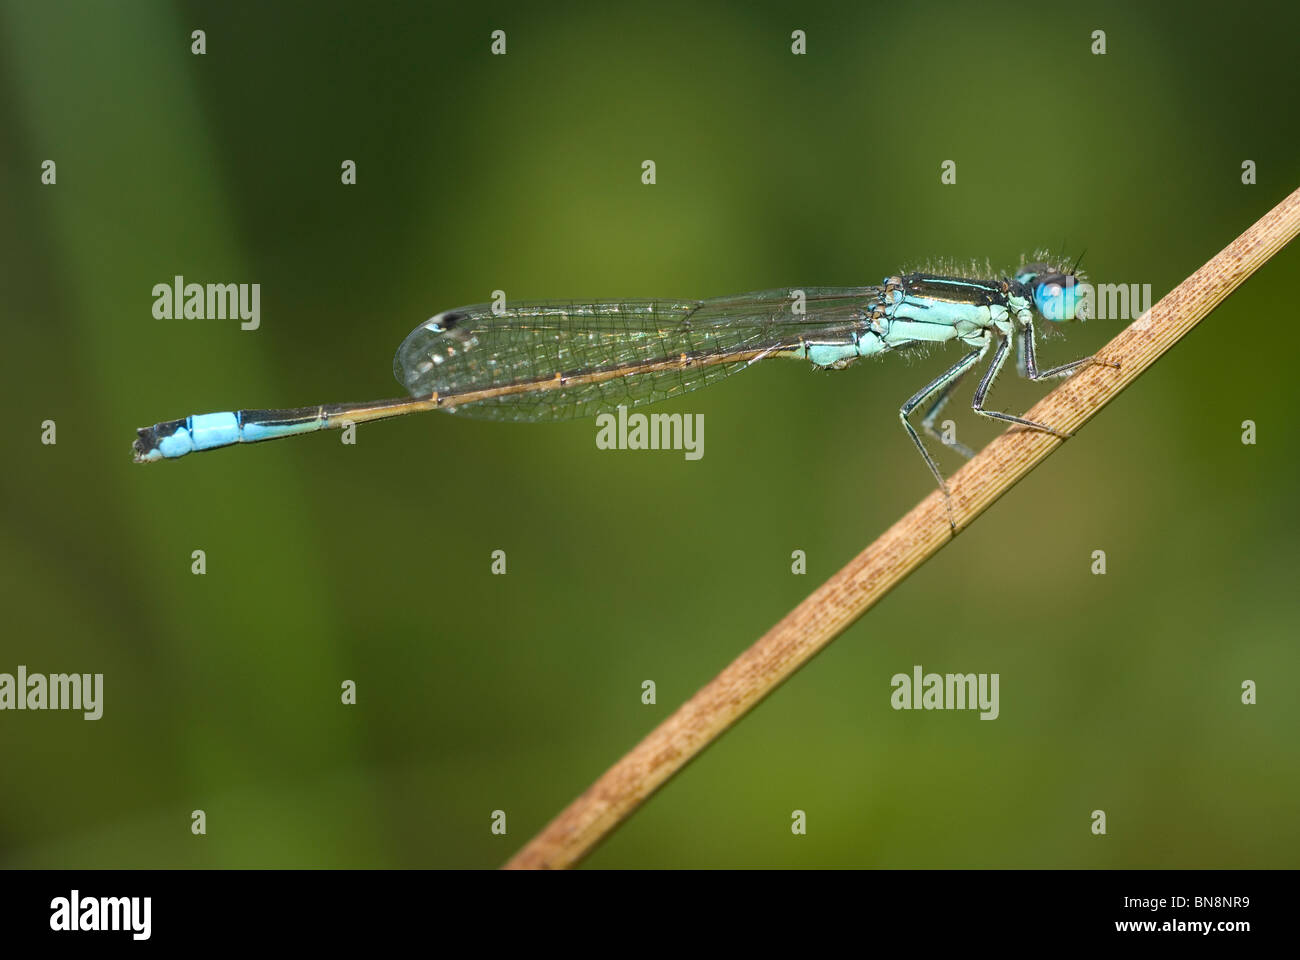 Iberian Bluetail damselfly (Ischnura graellsii) Stock Photo